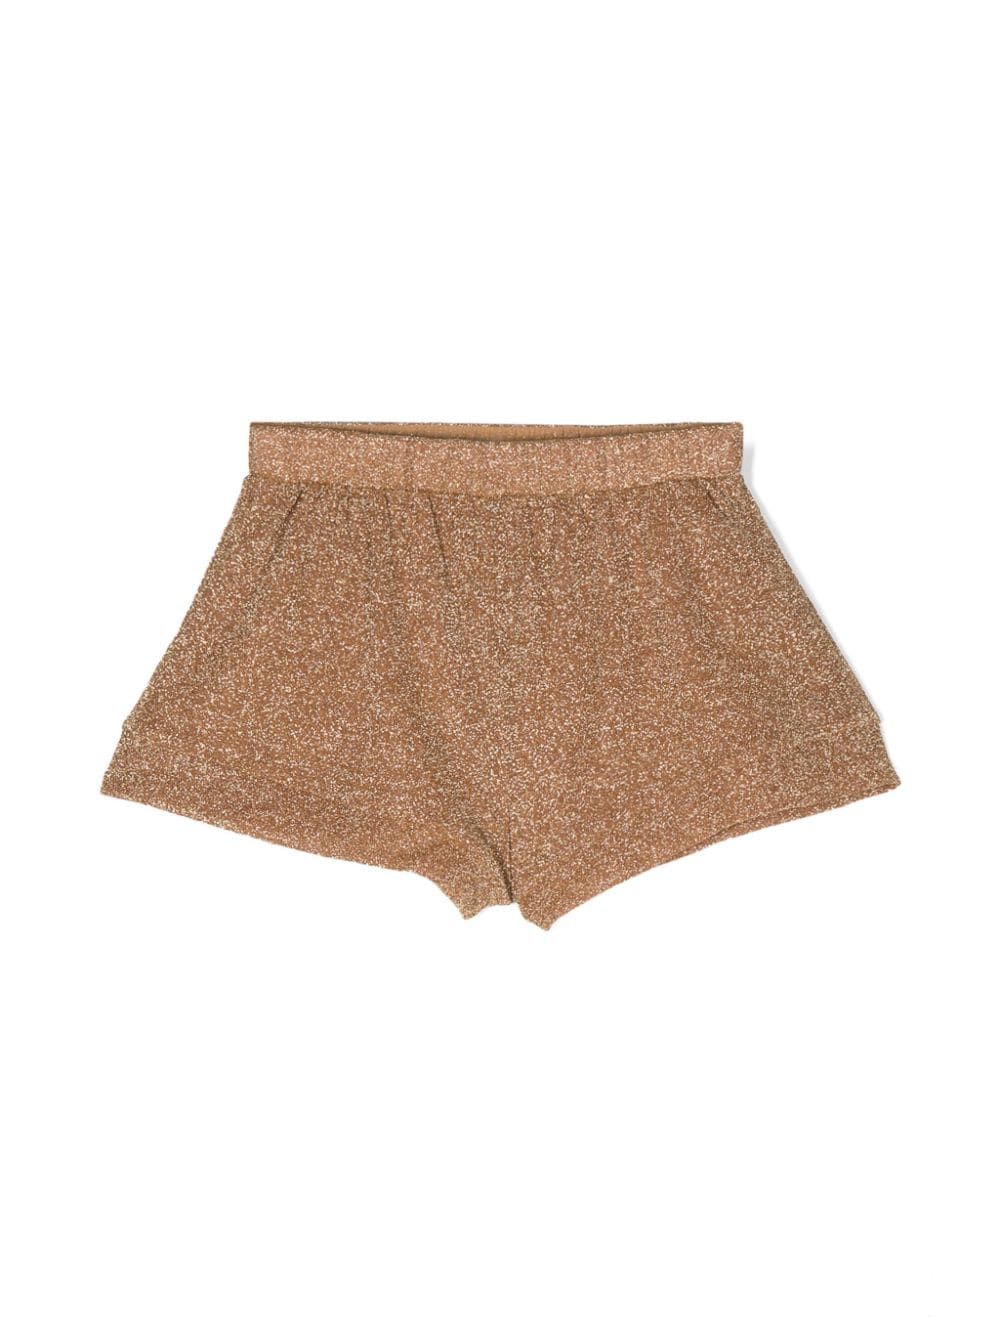 Oseree Kids elasticated lurex shorts - Gold von Oseree Kids